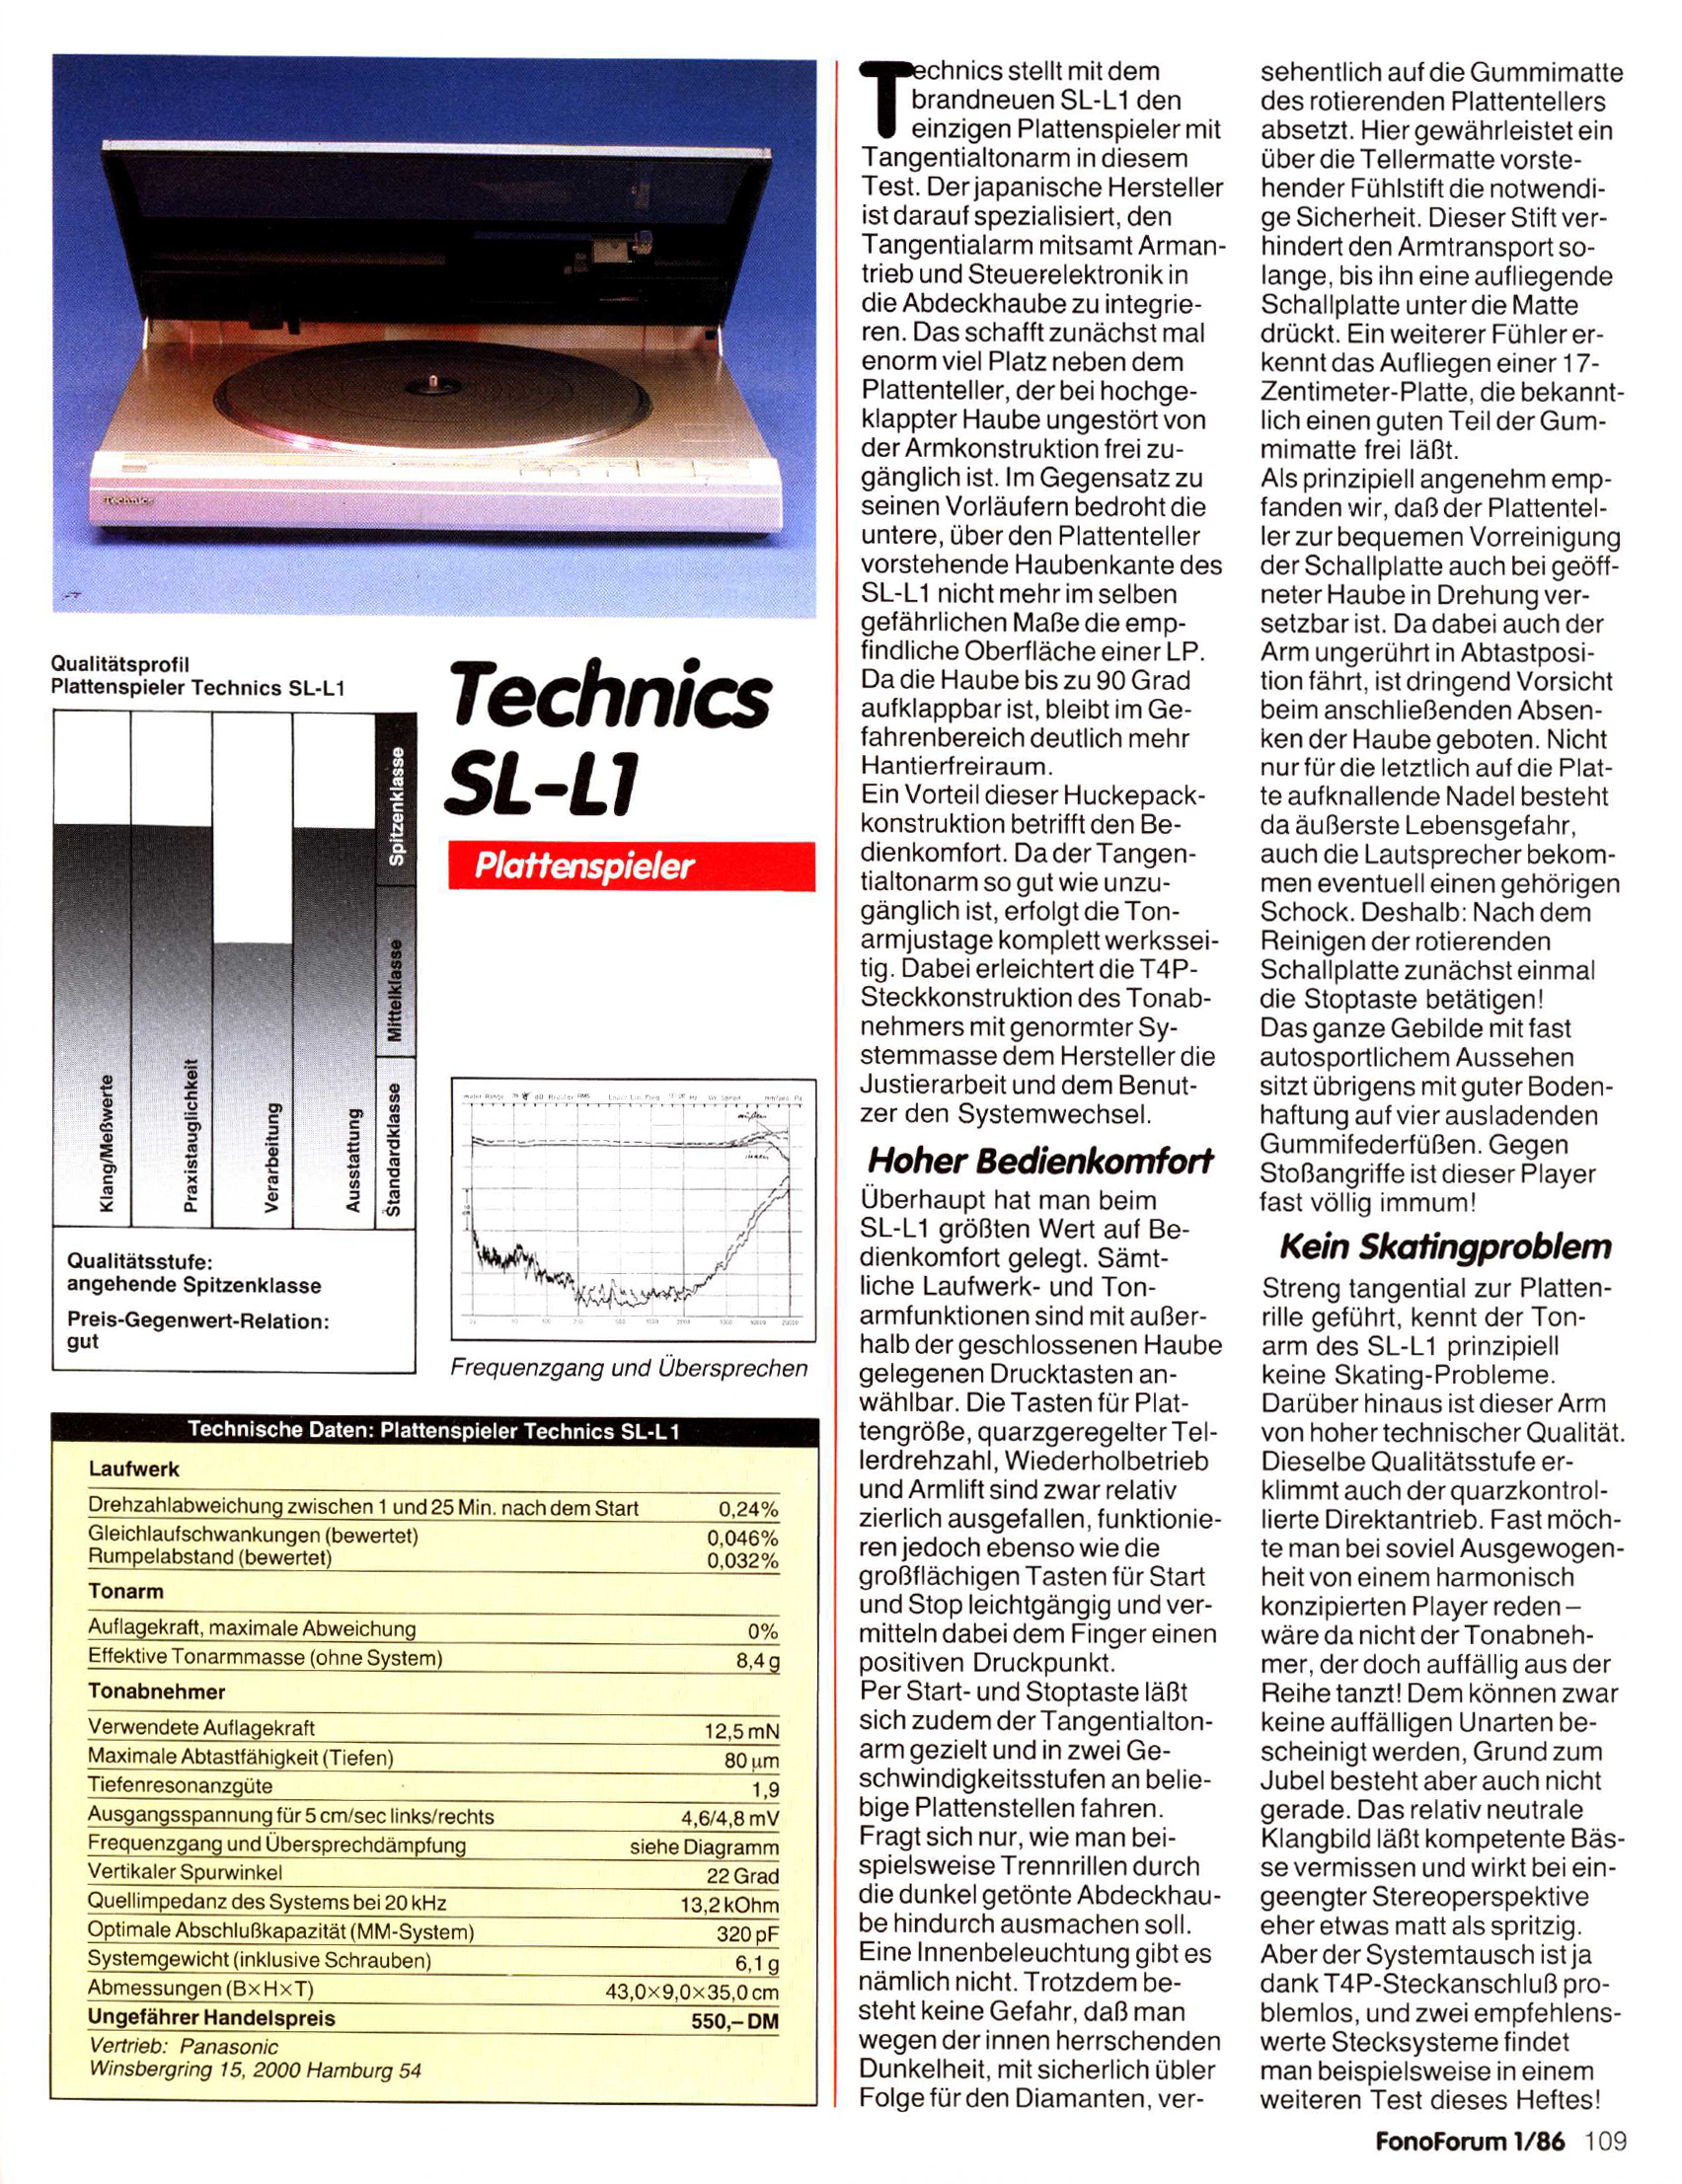 Technics SL-L 1-Test-1986.jpg